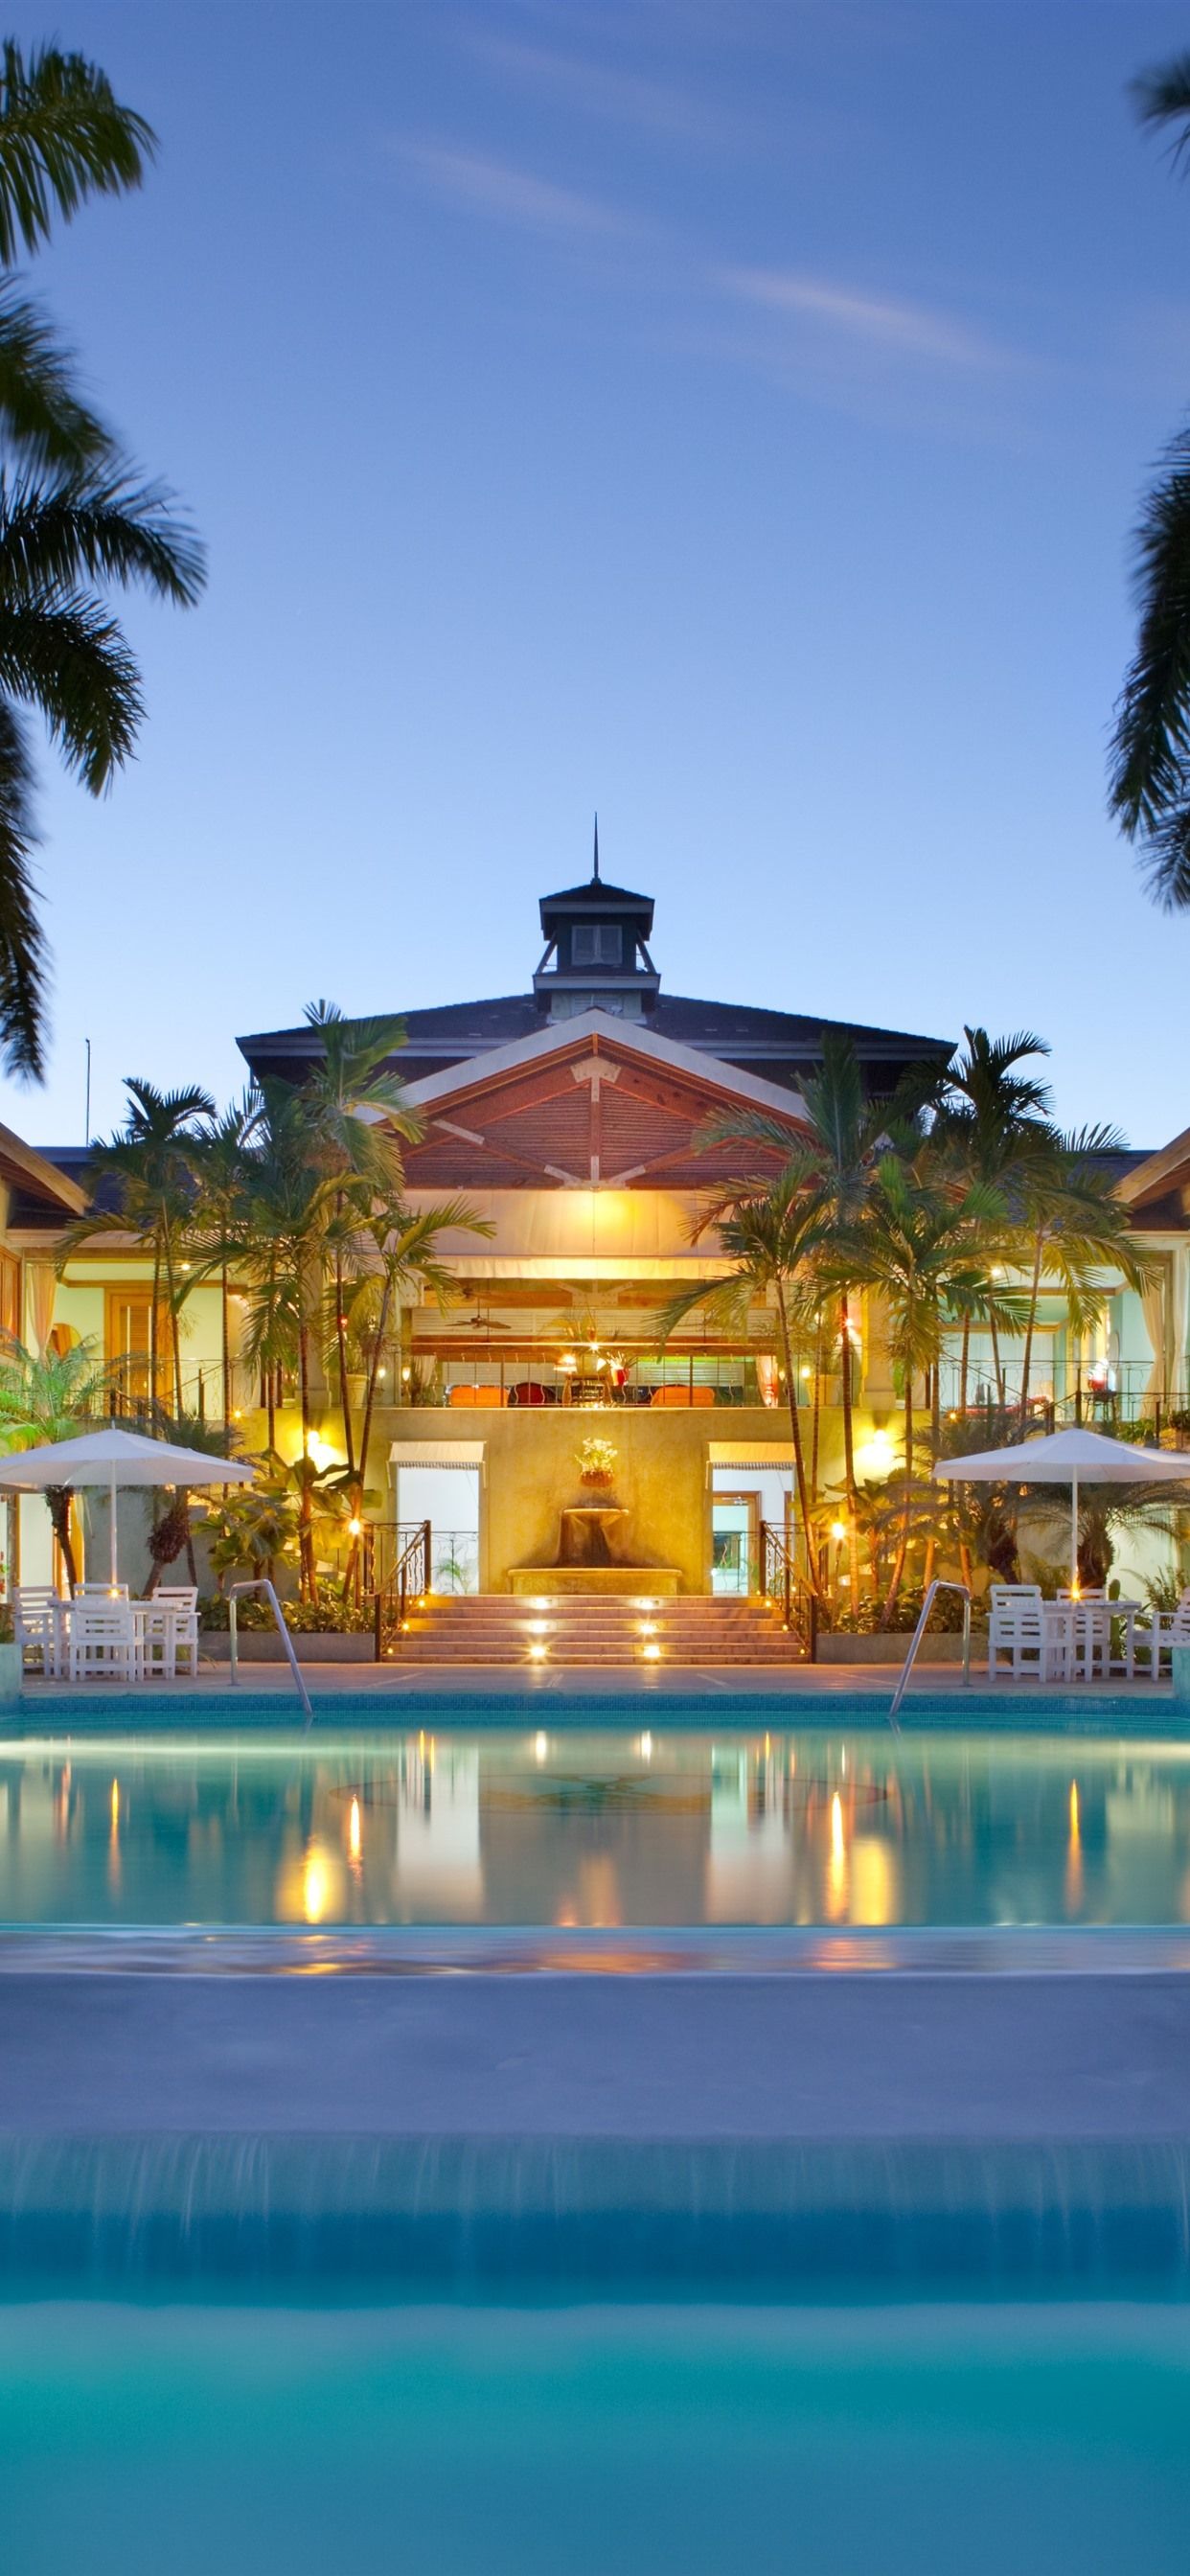 Maldives, villa, swim pool, palm trees, night, lights 1242x2688